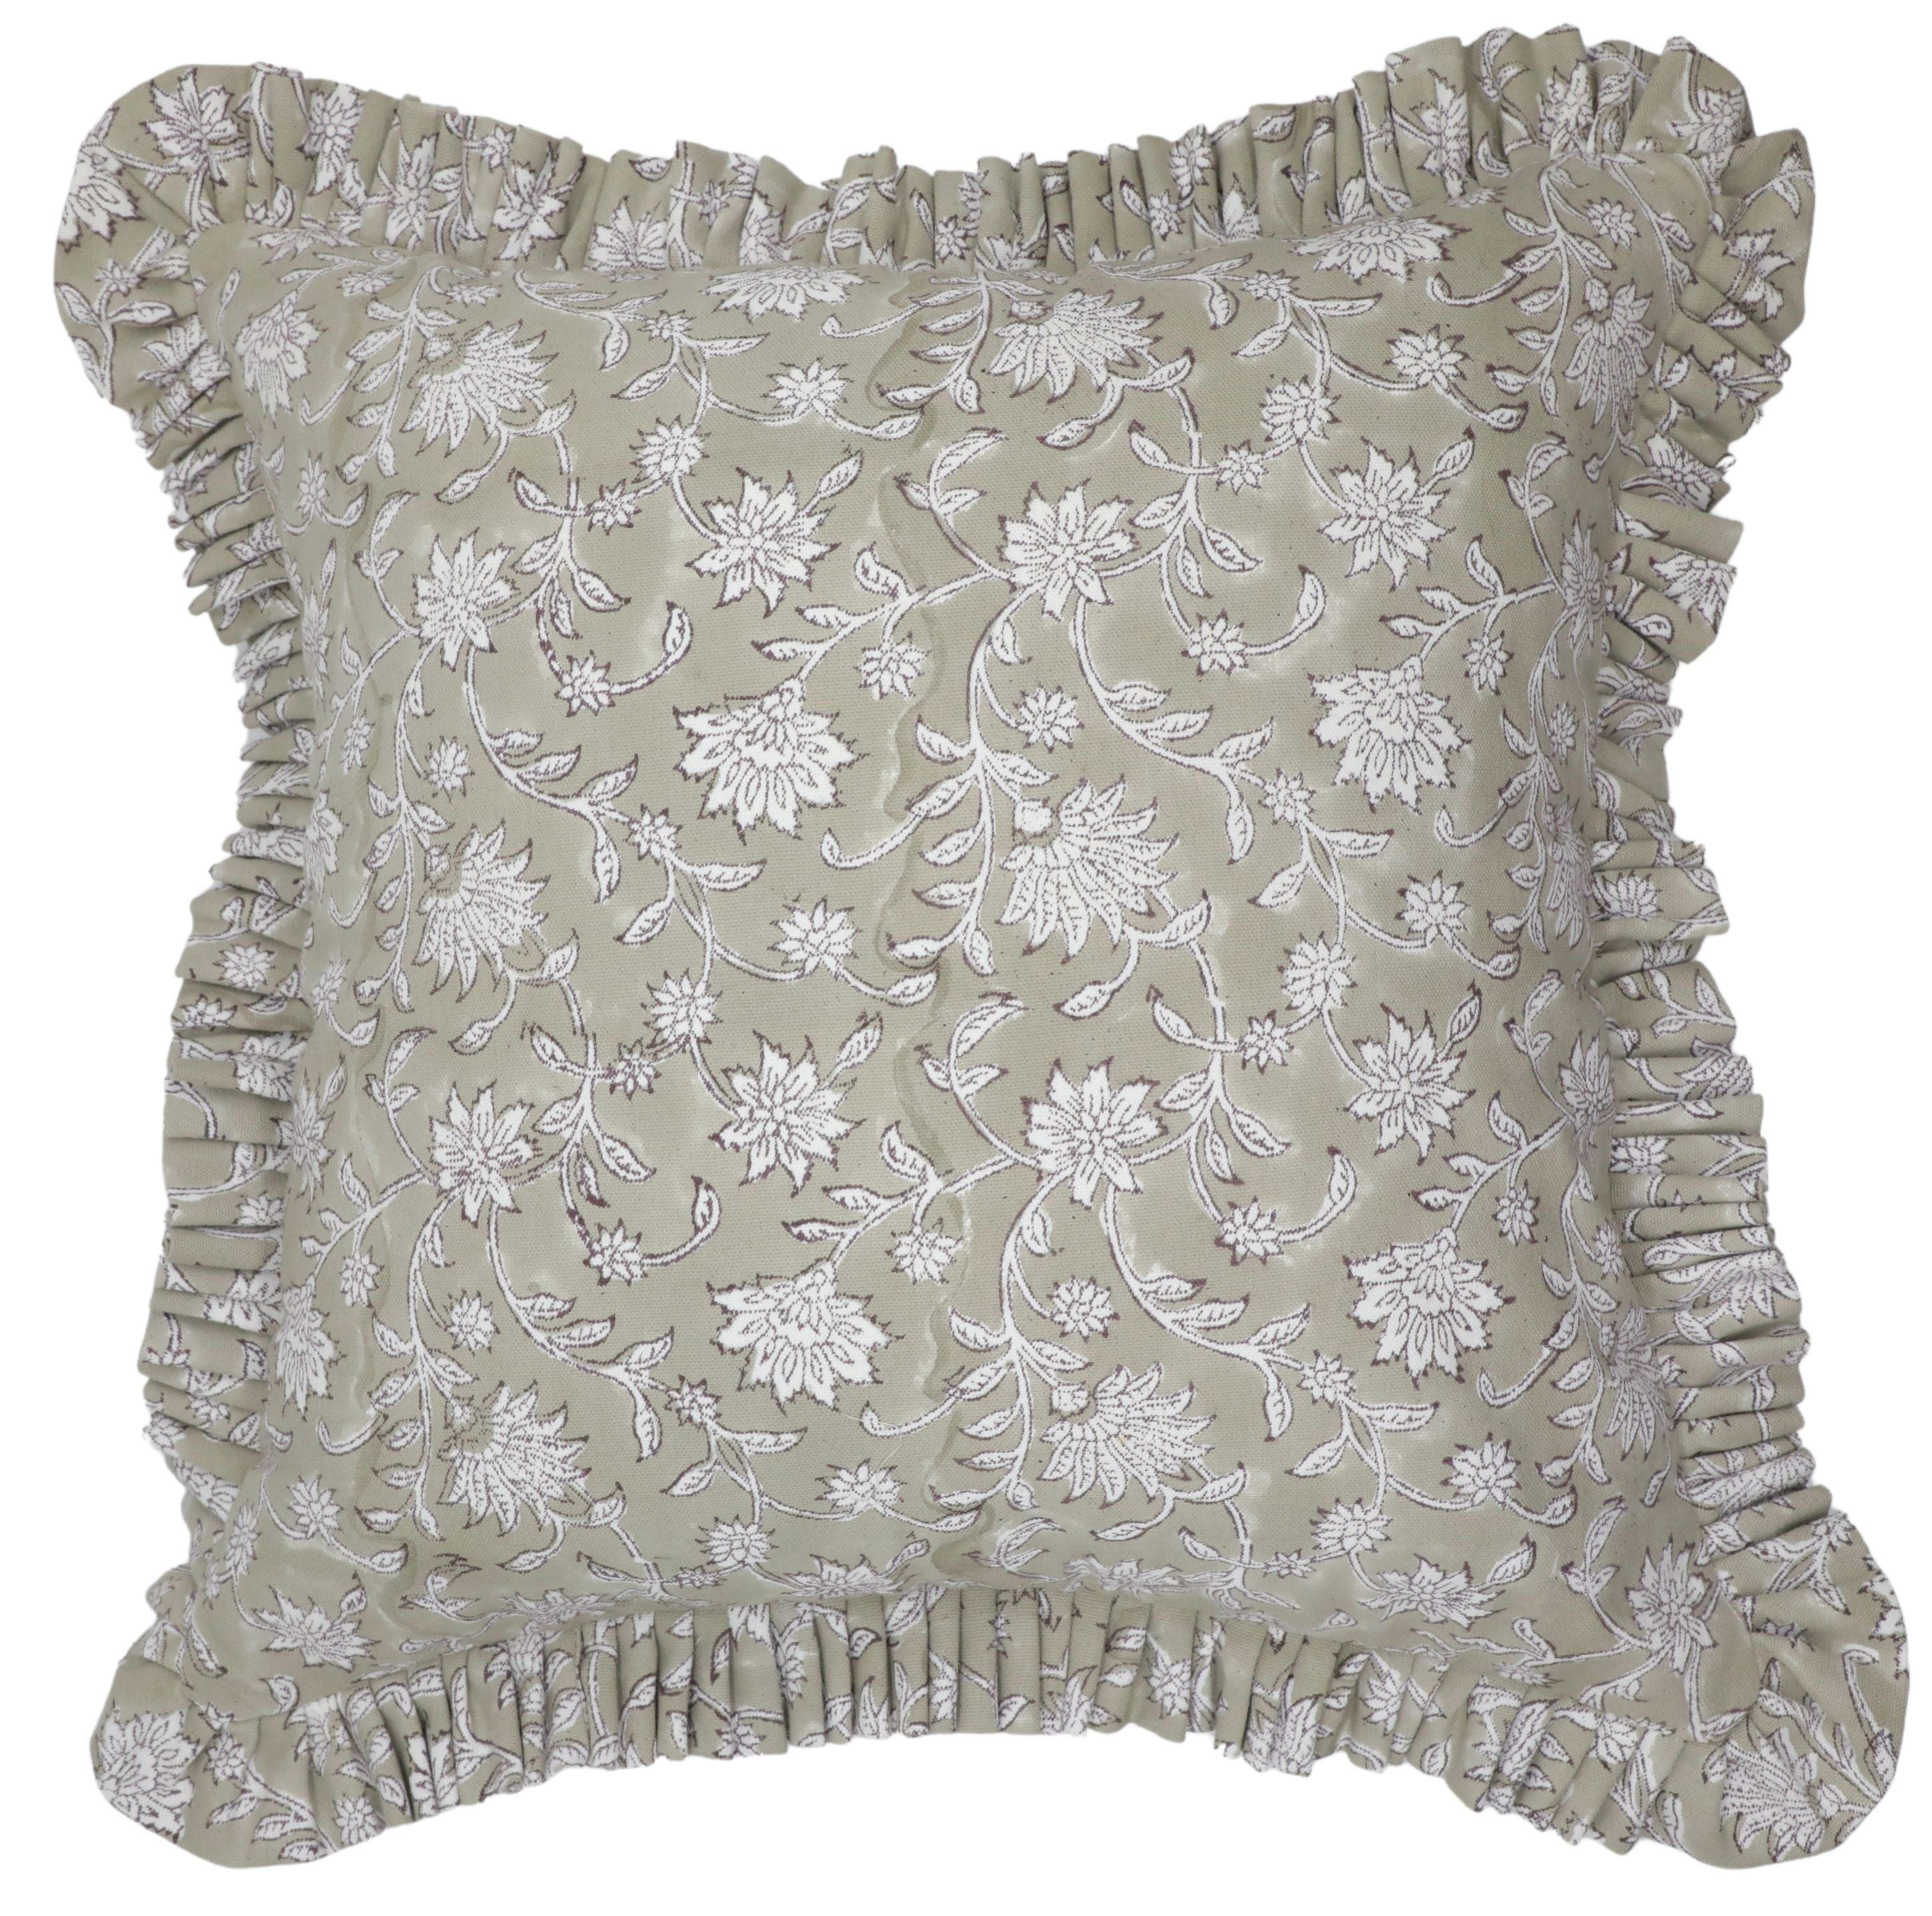 ARADHANA - Ruffle Pillow Cover Fabdivine